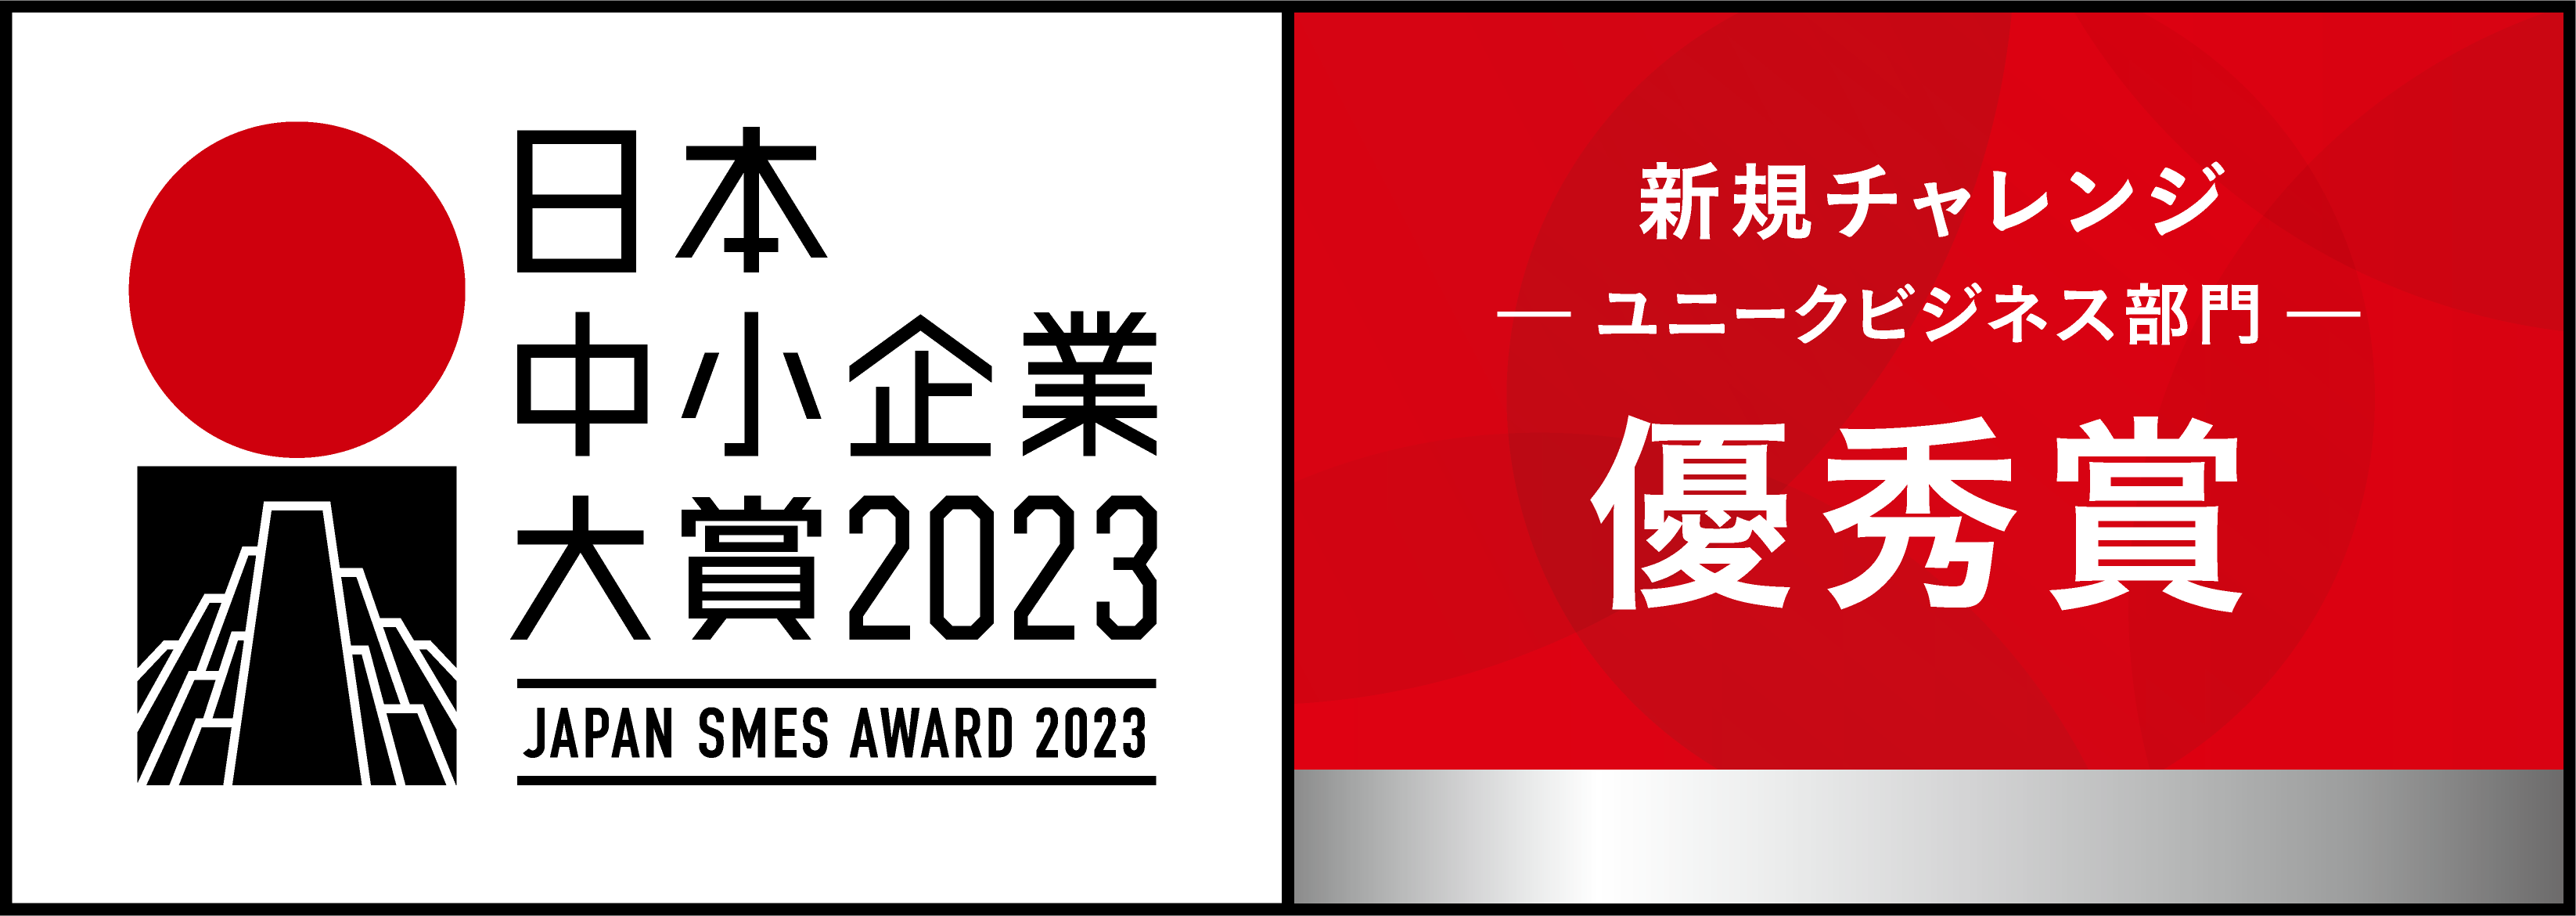 JAPAN SMES AWARD 2023 バナー